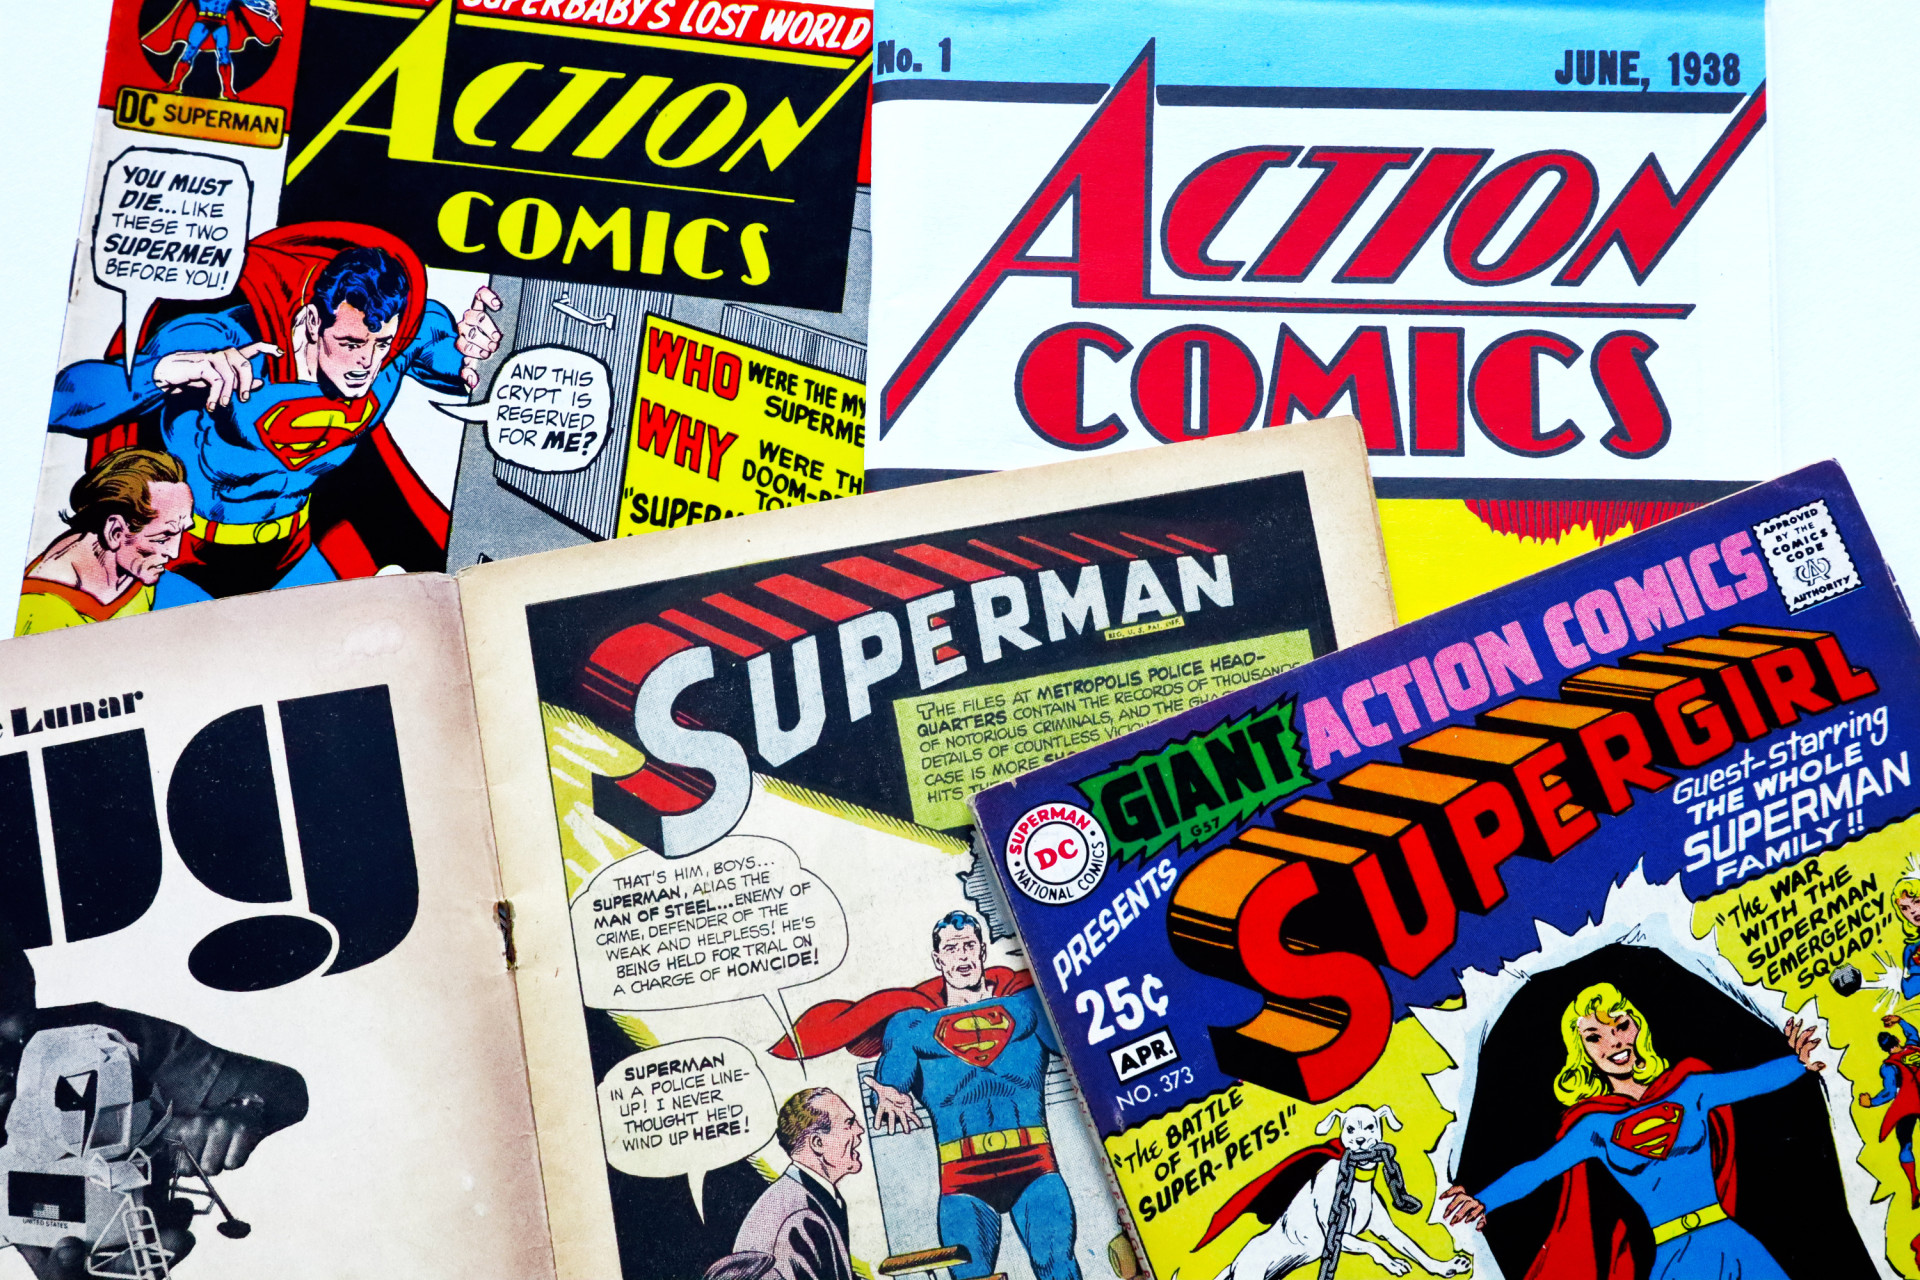 Couvertures vintage de bandes dessinées Dc Comics avec Superman et Supergirl.